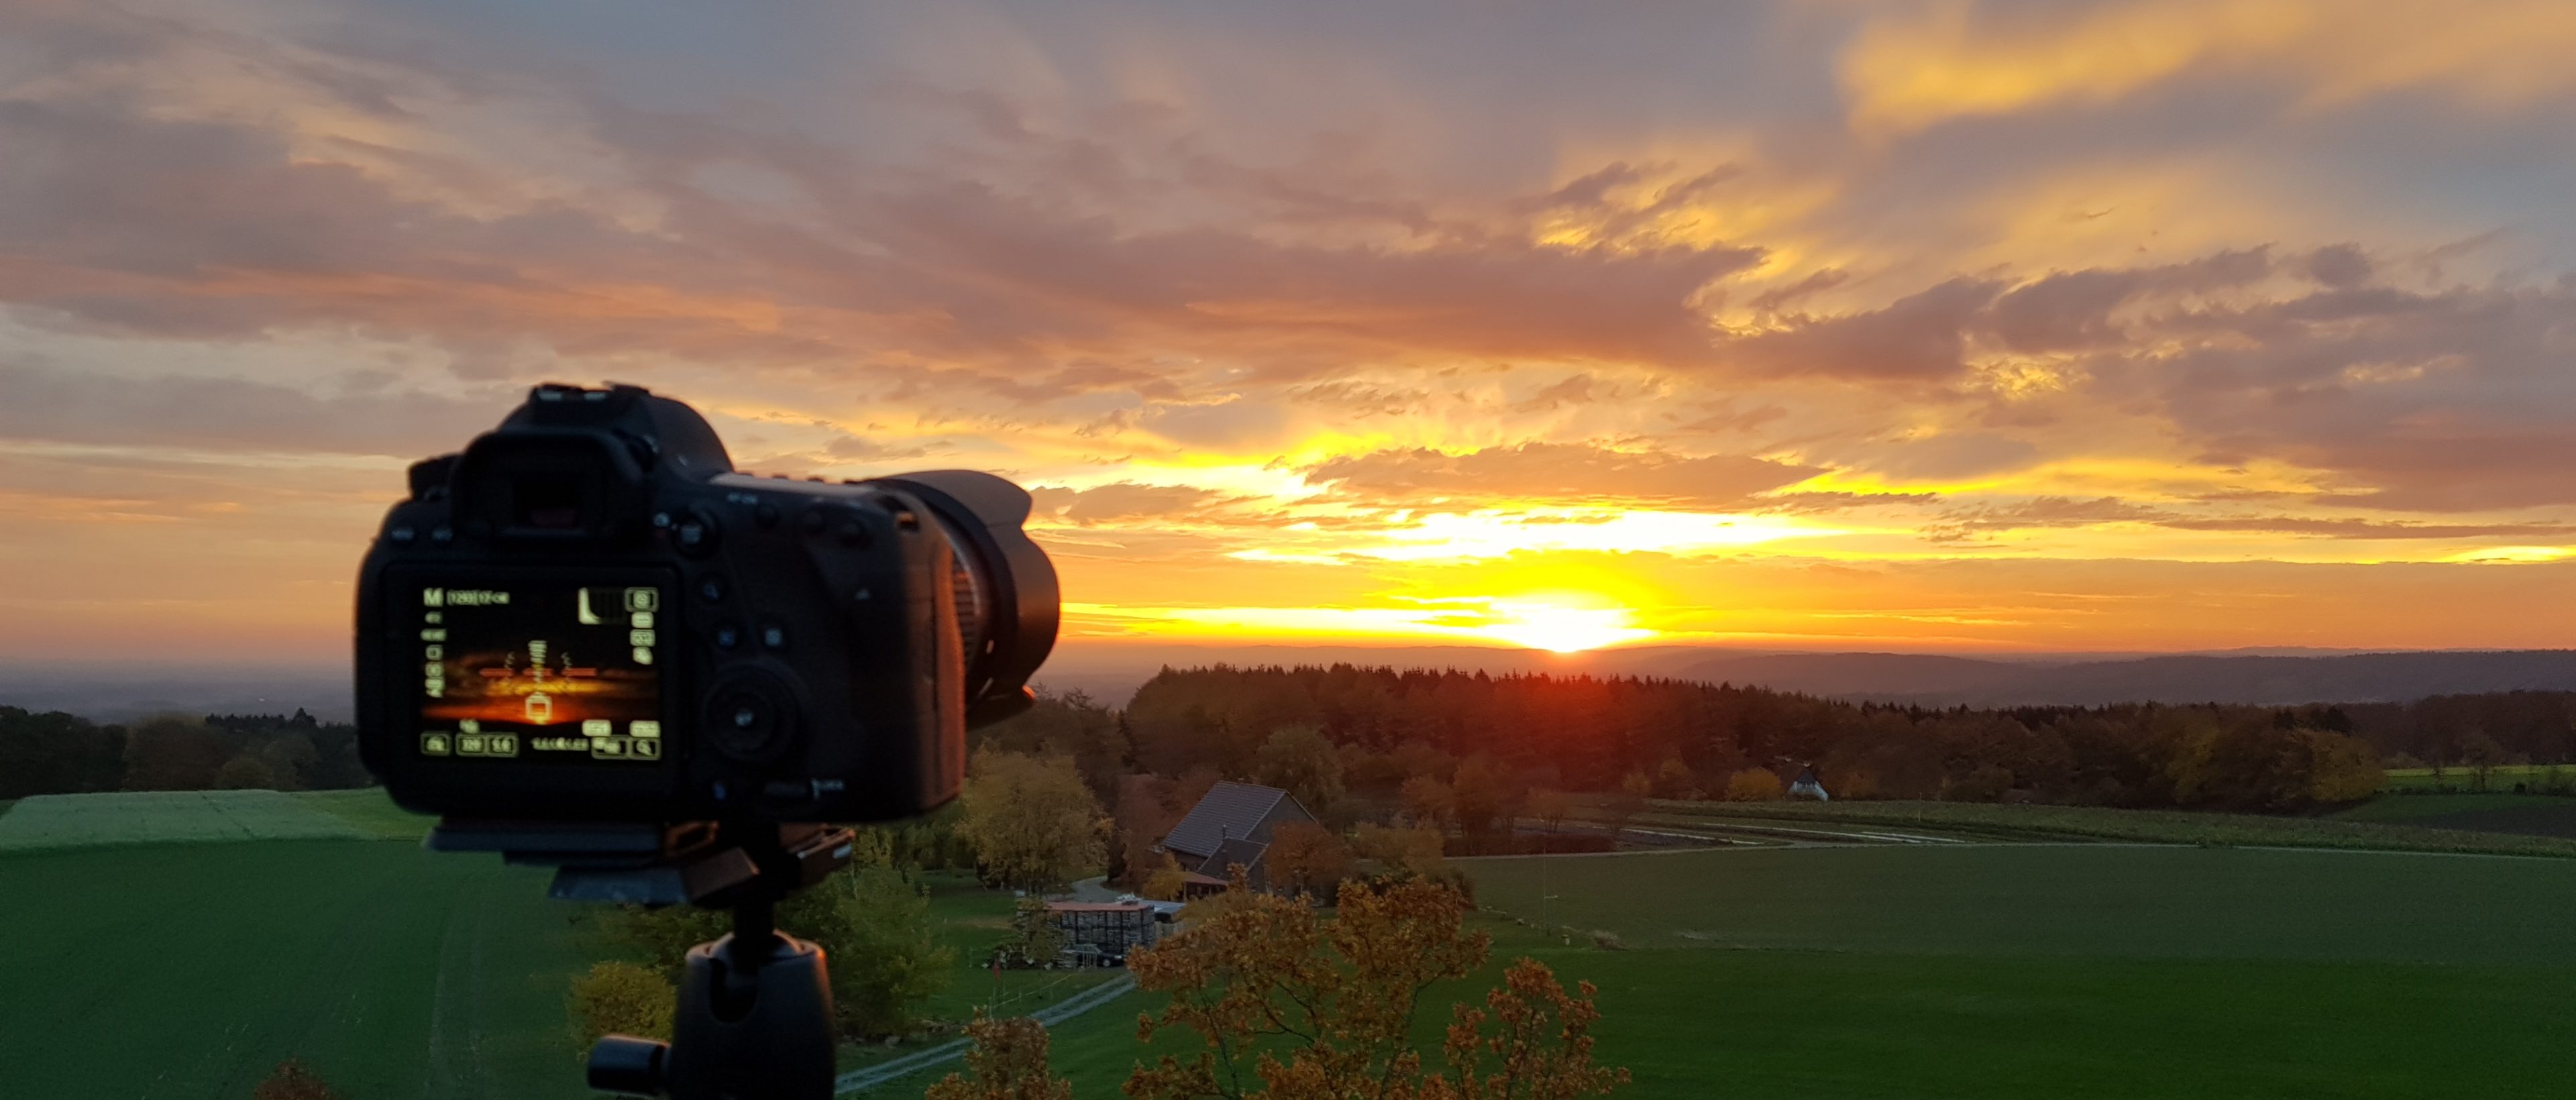 Preview Image: Wie Fotografiere ich einen Sonnenuntergang?